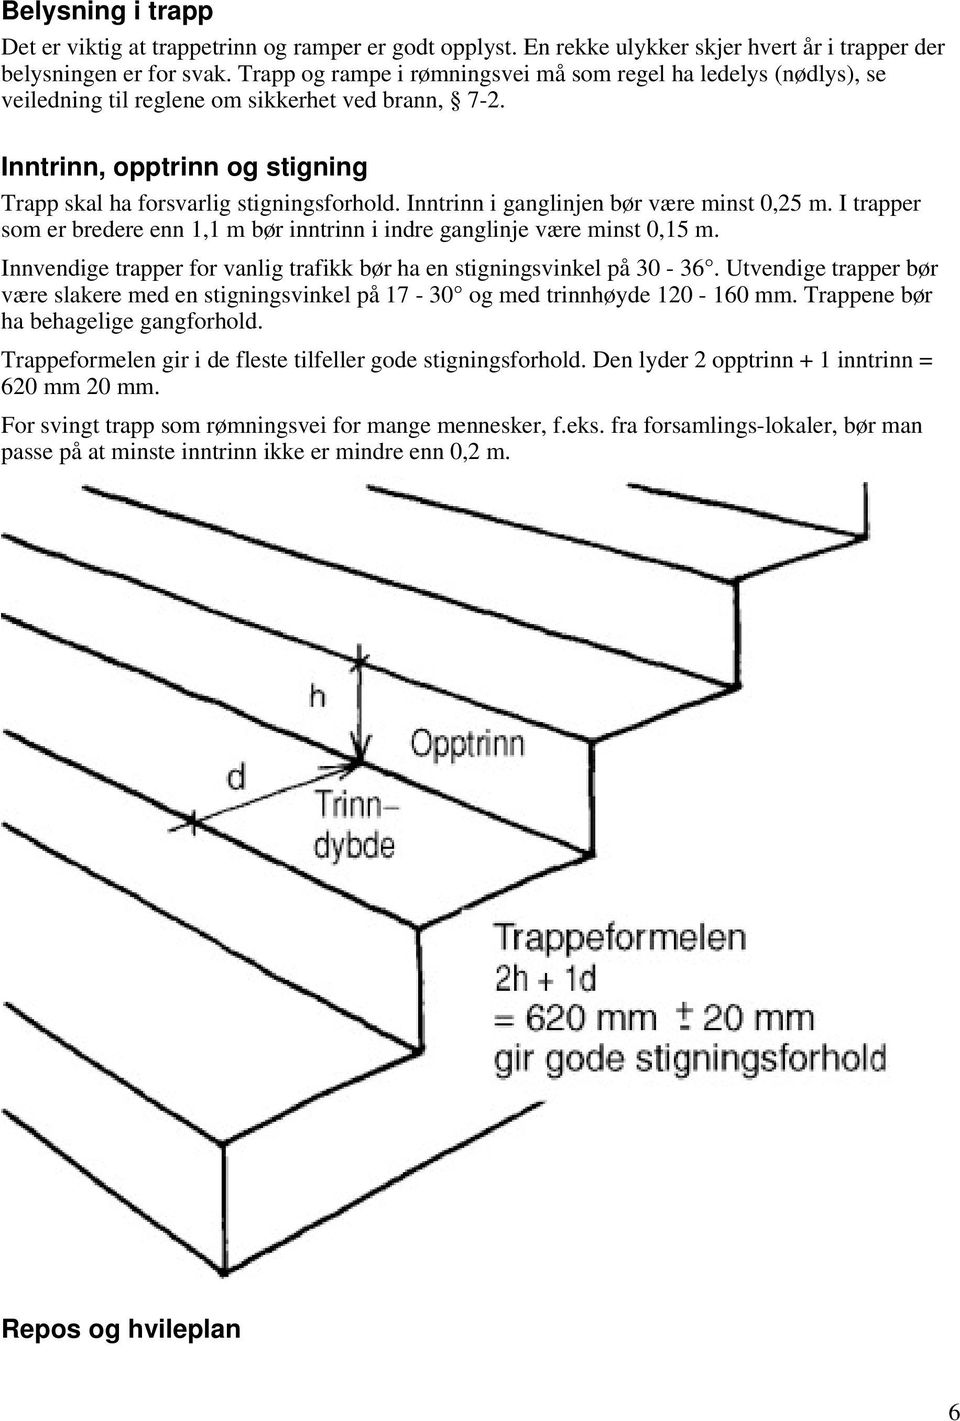 Inntrinn i ganglinjen bør være minst 0,25 m. I trapper som er bredere enn 1,1 m bør inntrinn i indre ganglinje være minst 0,15 m.